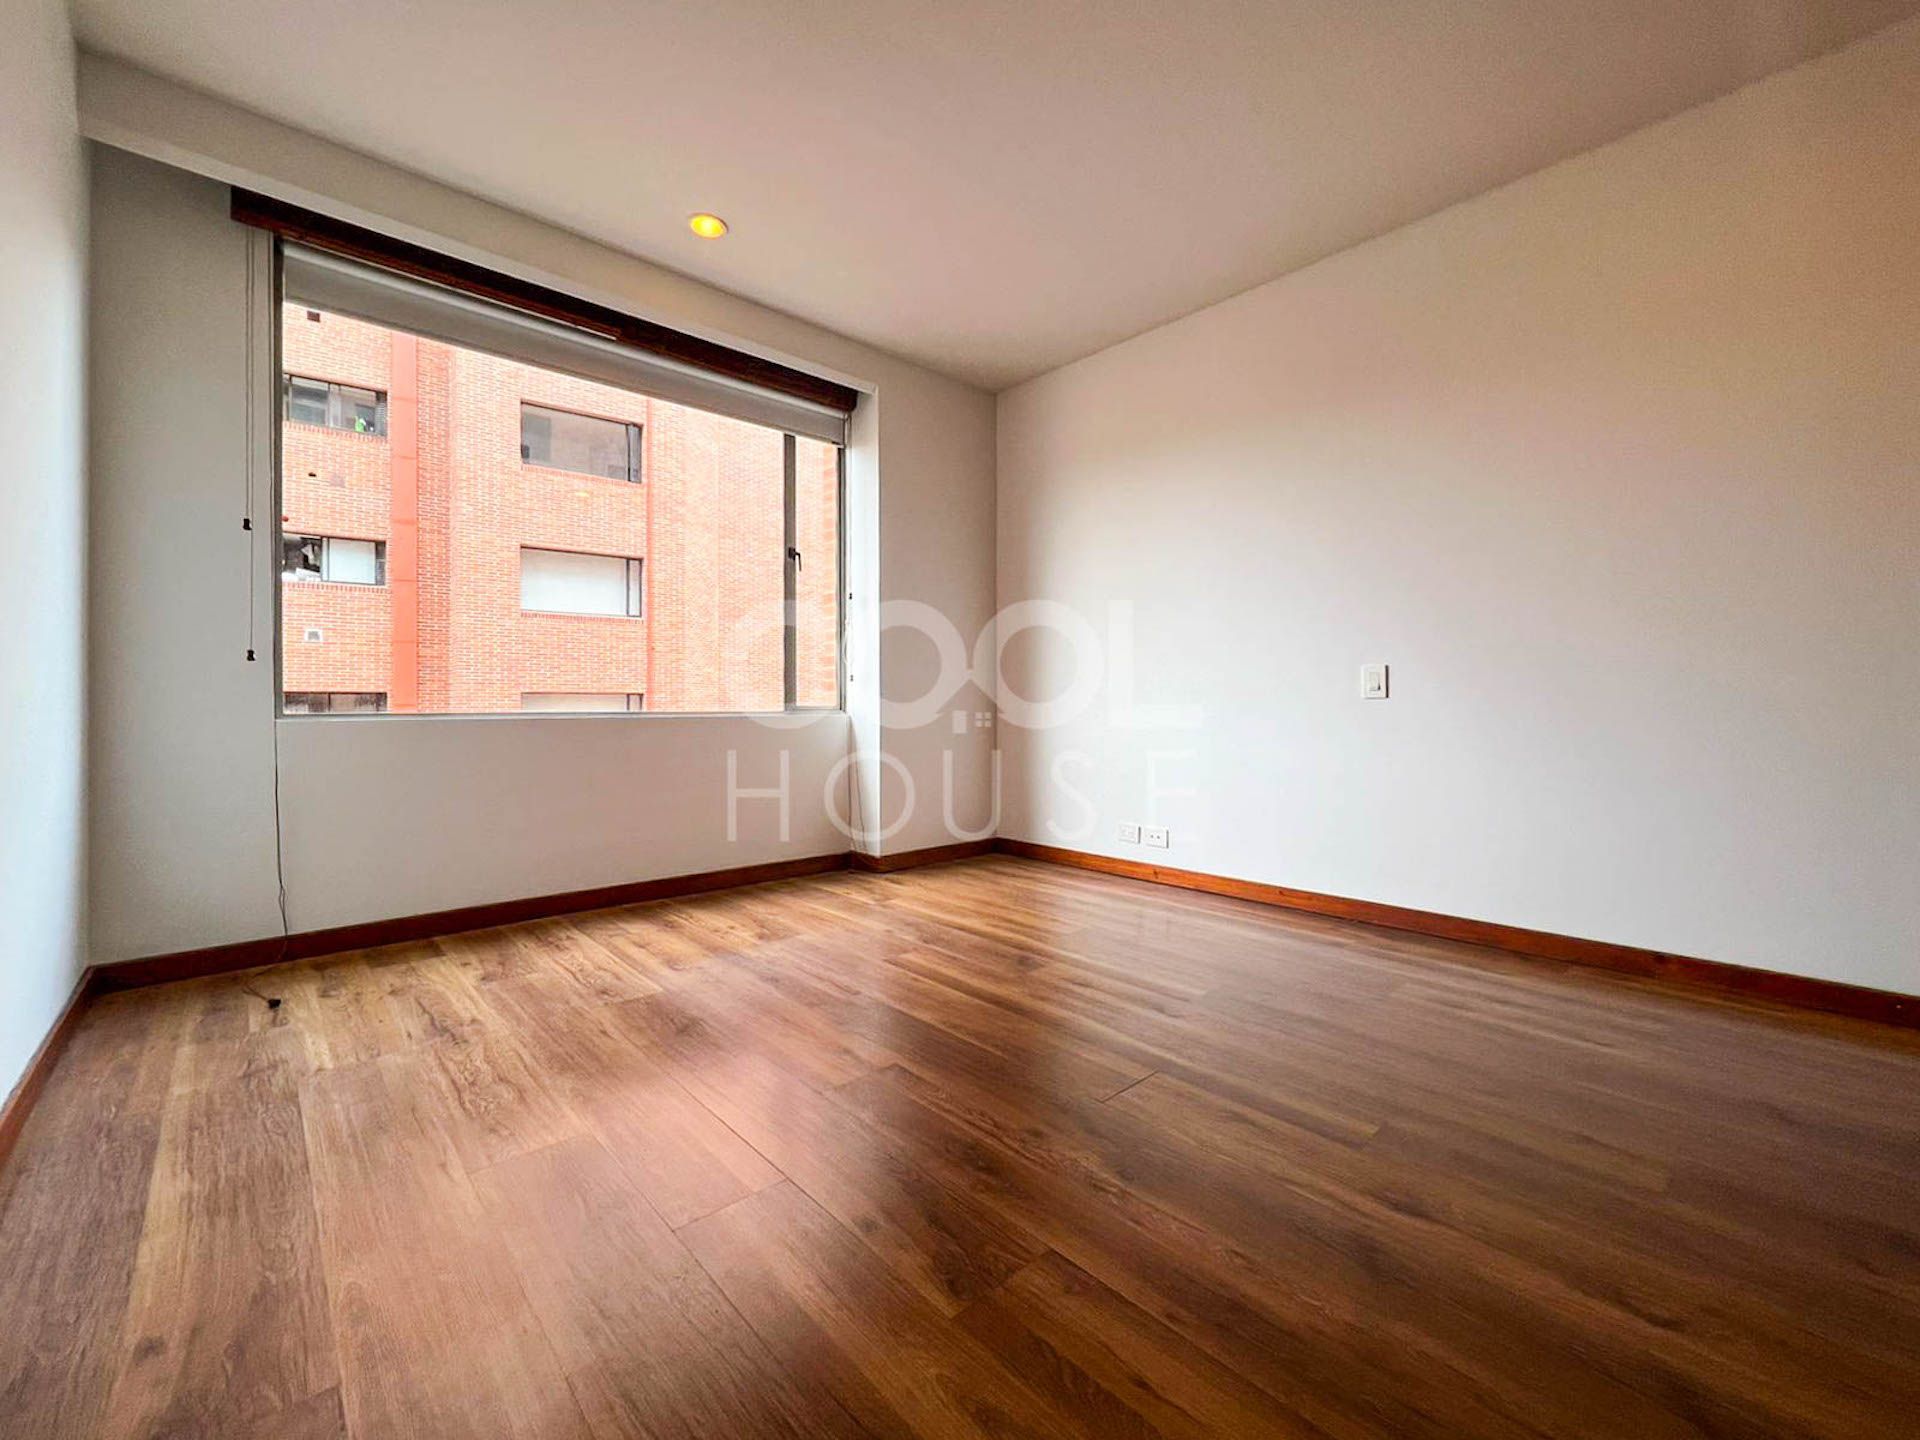 Apartamento en arriendo Hipotecho Occidental 234 m² - $ 11.290.000,00